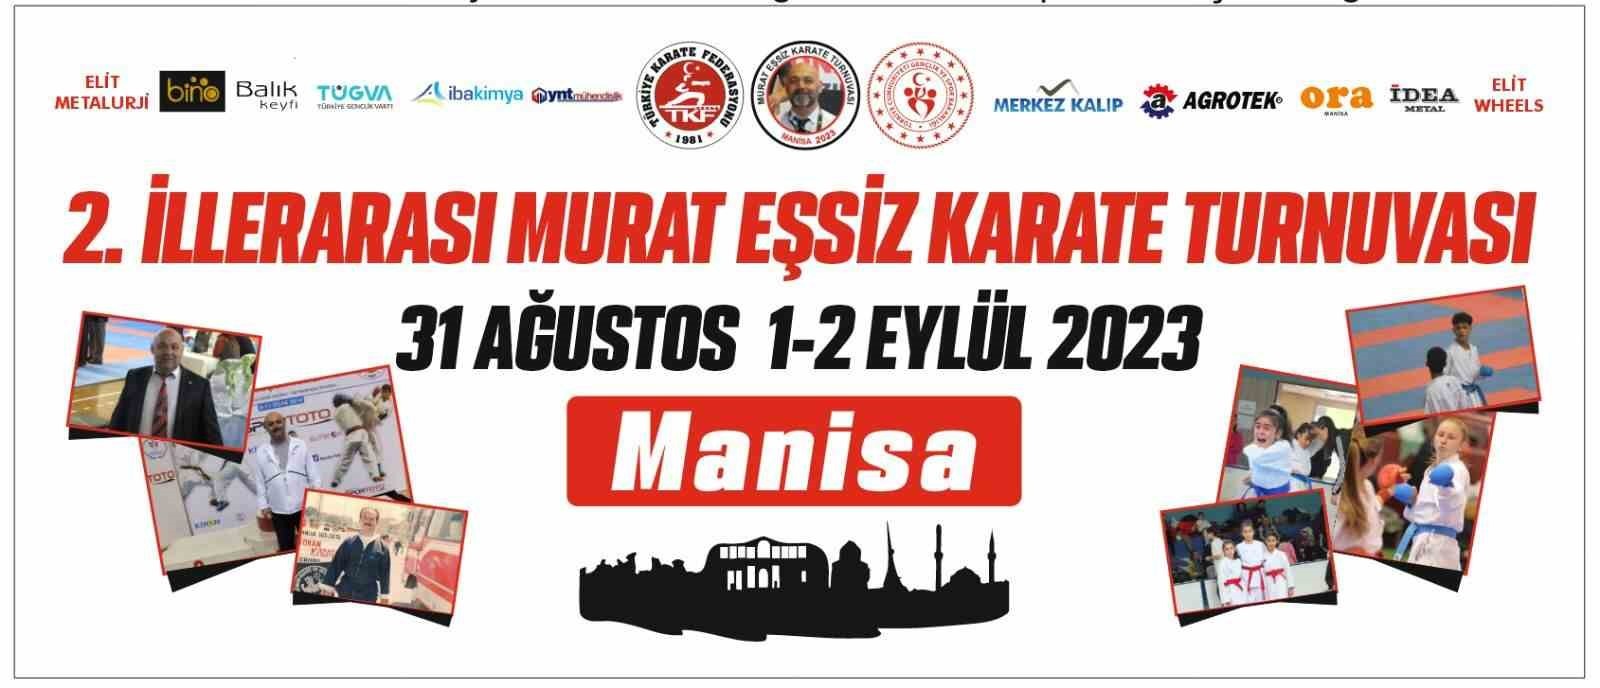 2023/08/manisada-2-murat-essiz-karate-turnuvasi-basliyor-20230829AW01-2.jpg